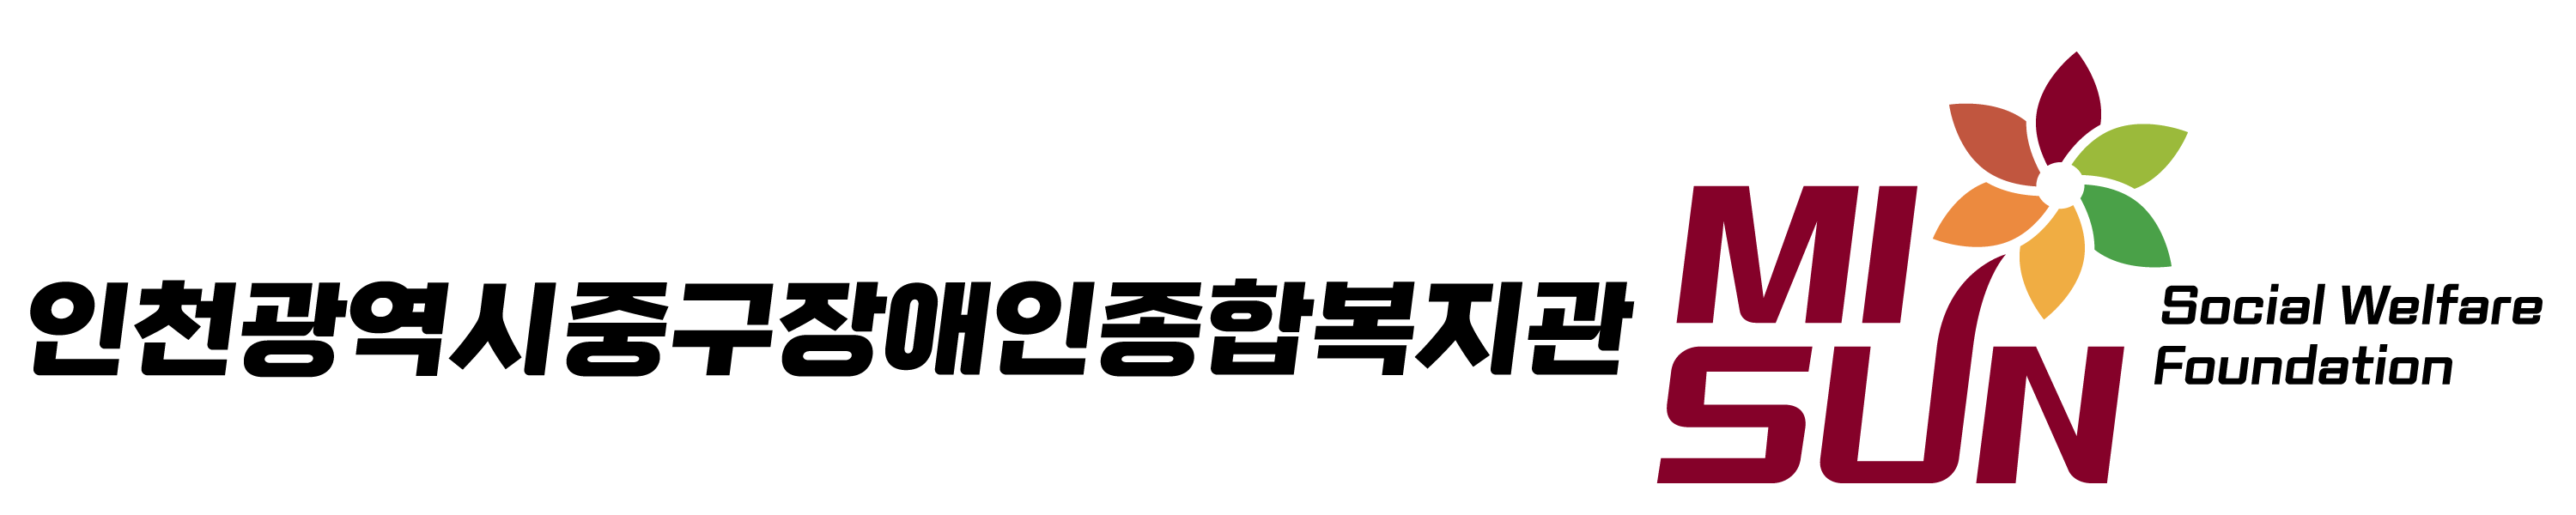 인천광역시중구장애인종합복지관 로고